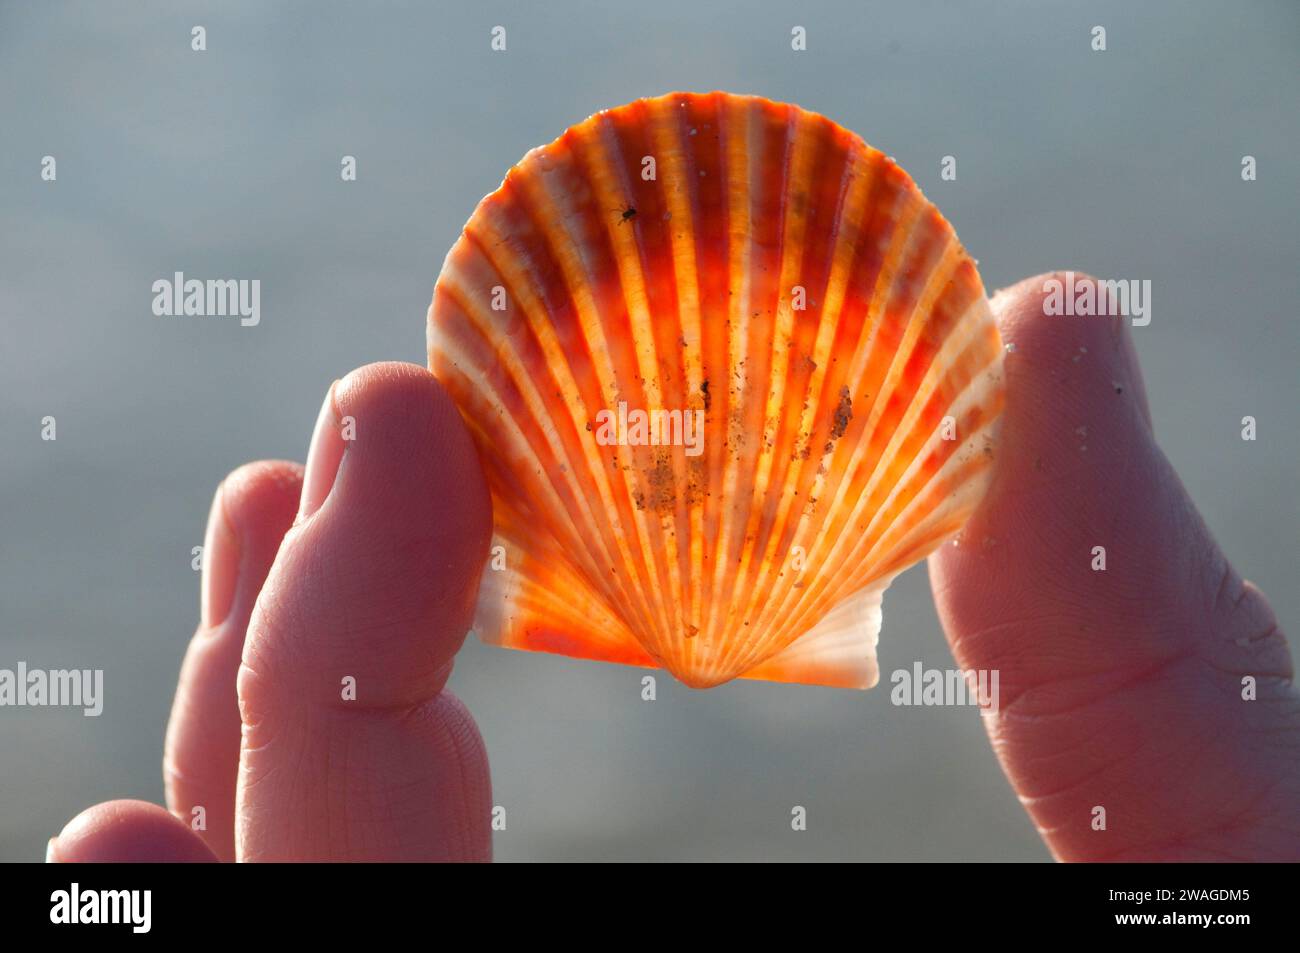 Pectin shell, Padre Island National Seashore, Texas Stock Photo